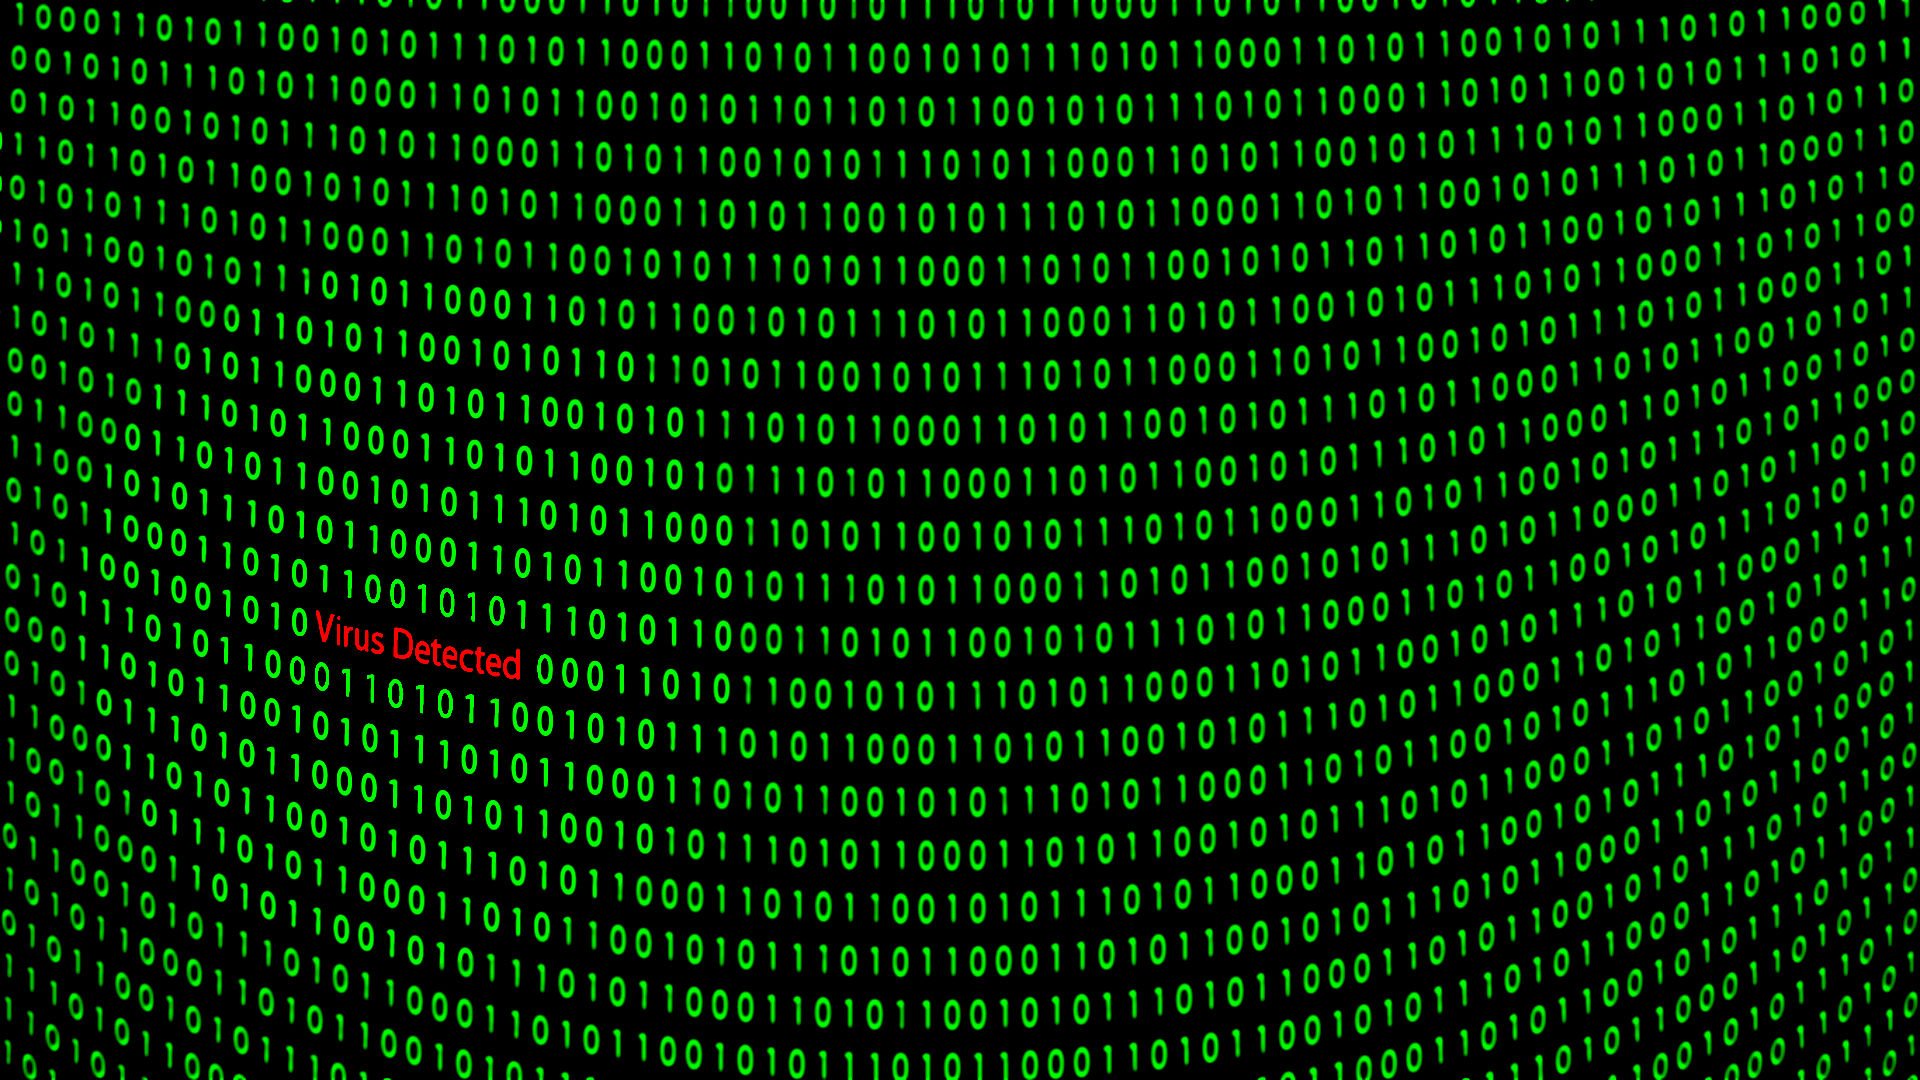 Virus Danger Hacking Hacker Inter Sadic Wallpaper Background